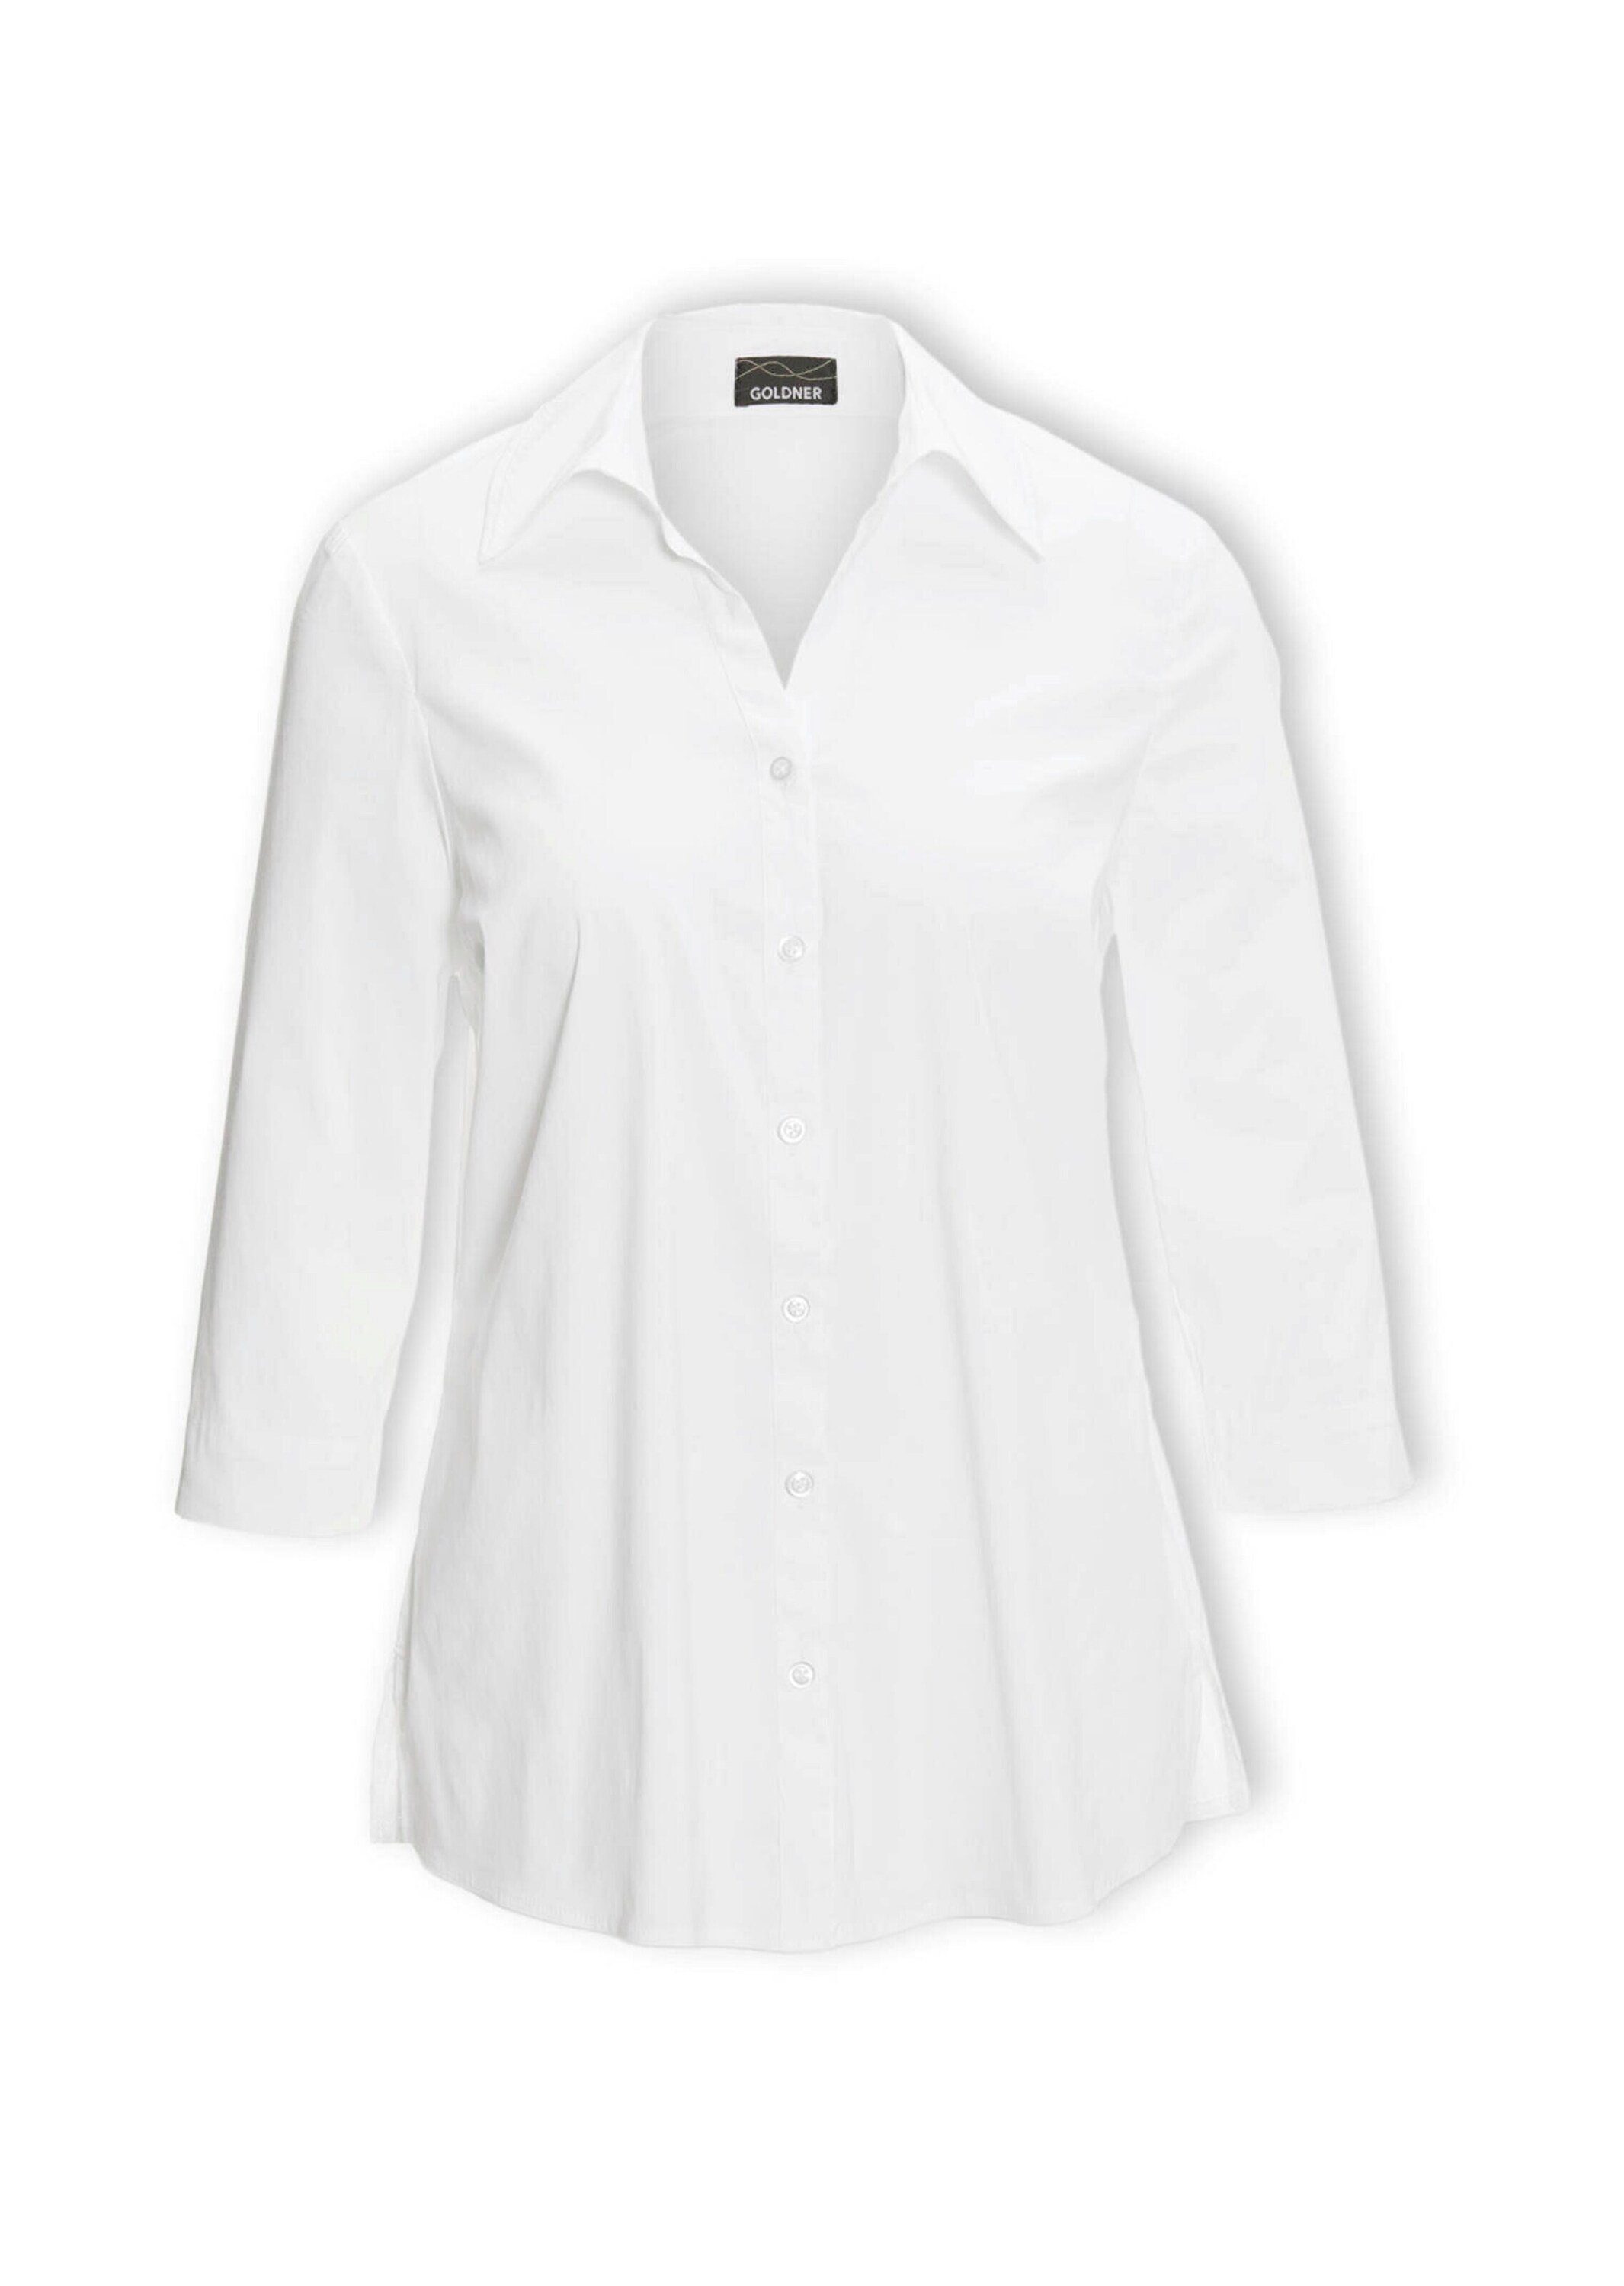 GOLDNER Hemdbluse Kurzgröße: Stretchbequeme Bluse mit Baumwolle weiß